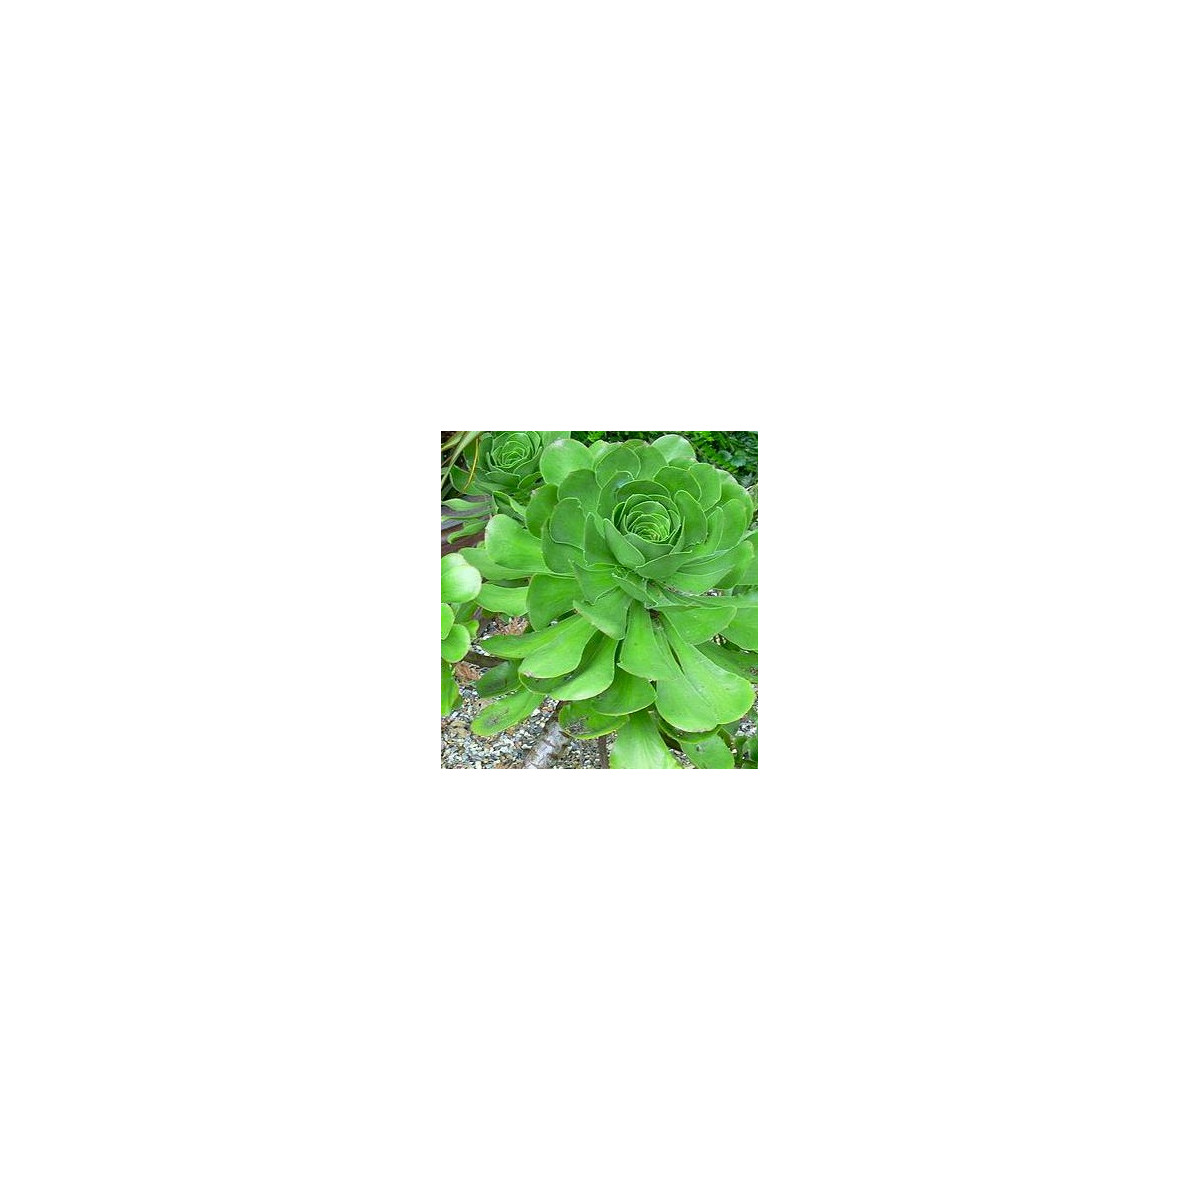 Růžicovka - semínka Růžicovky - rostlina Aeonium ciliatum pěstování - 10 ks